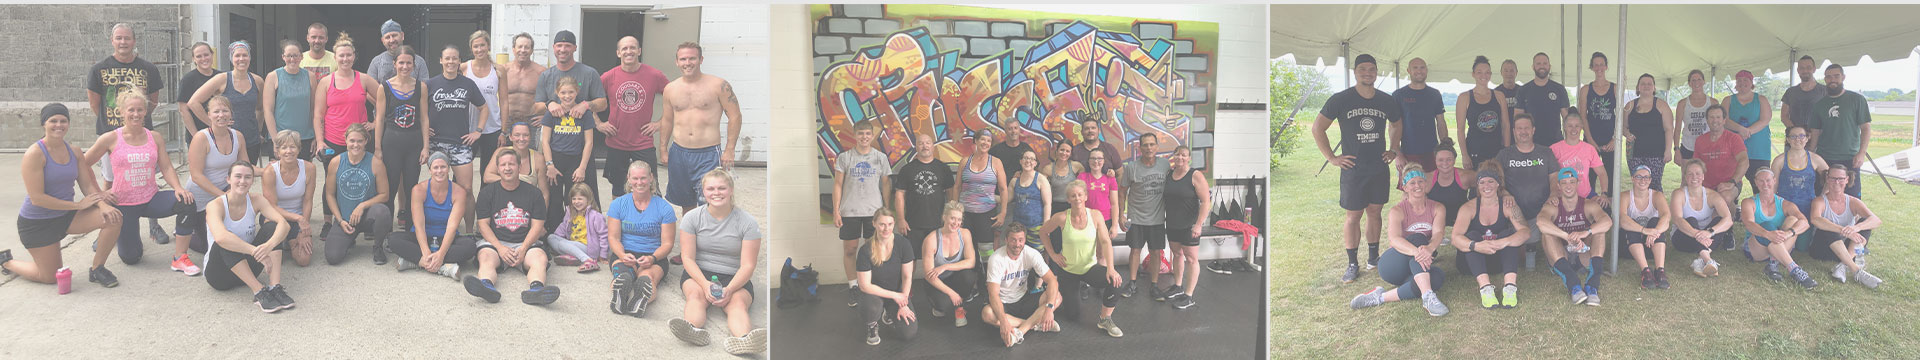 CrossFit Timoro members celebrating fitness in Hillsdale, MI